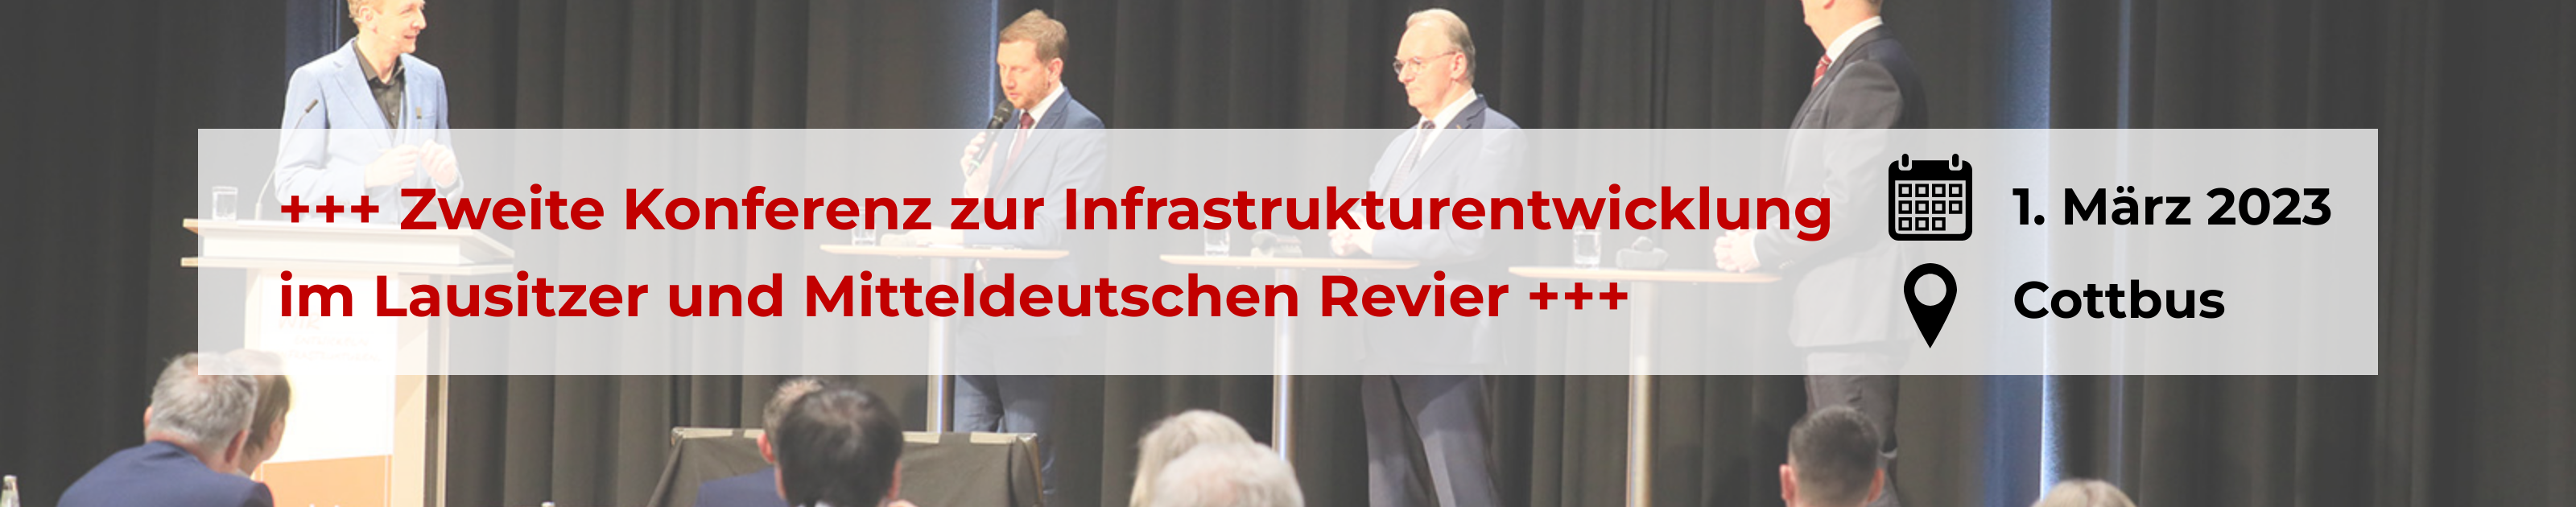 Werbebanner: Save the Date für die zweite Konferenz zur Infrastrukturentwicklung im Lausitzer und Mitteldeutschen Revier